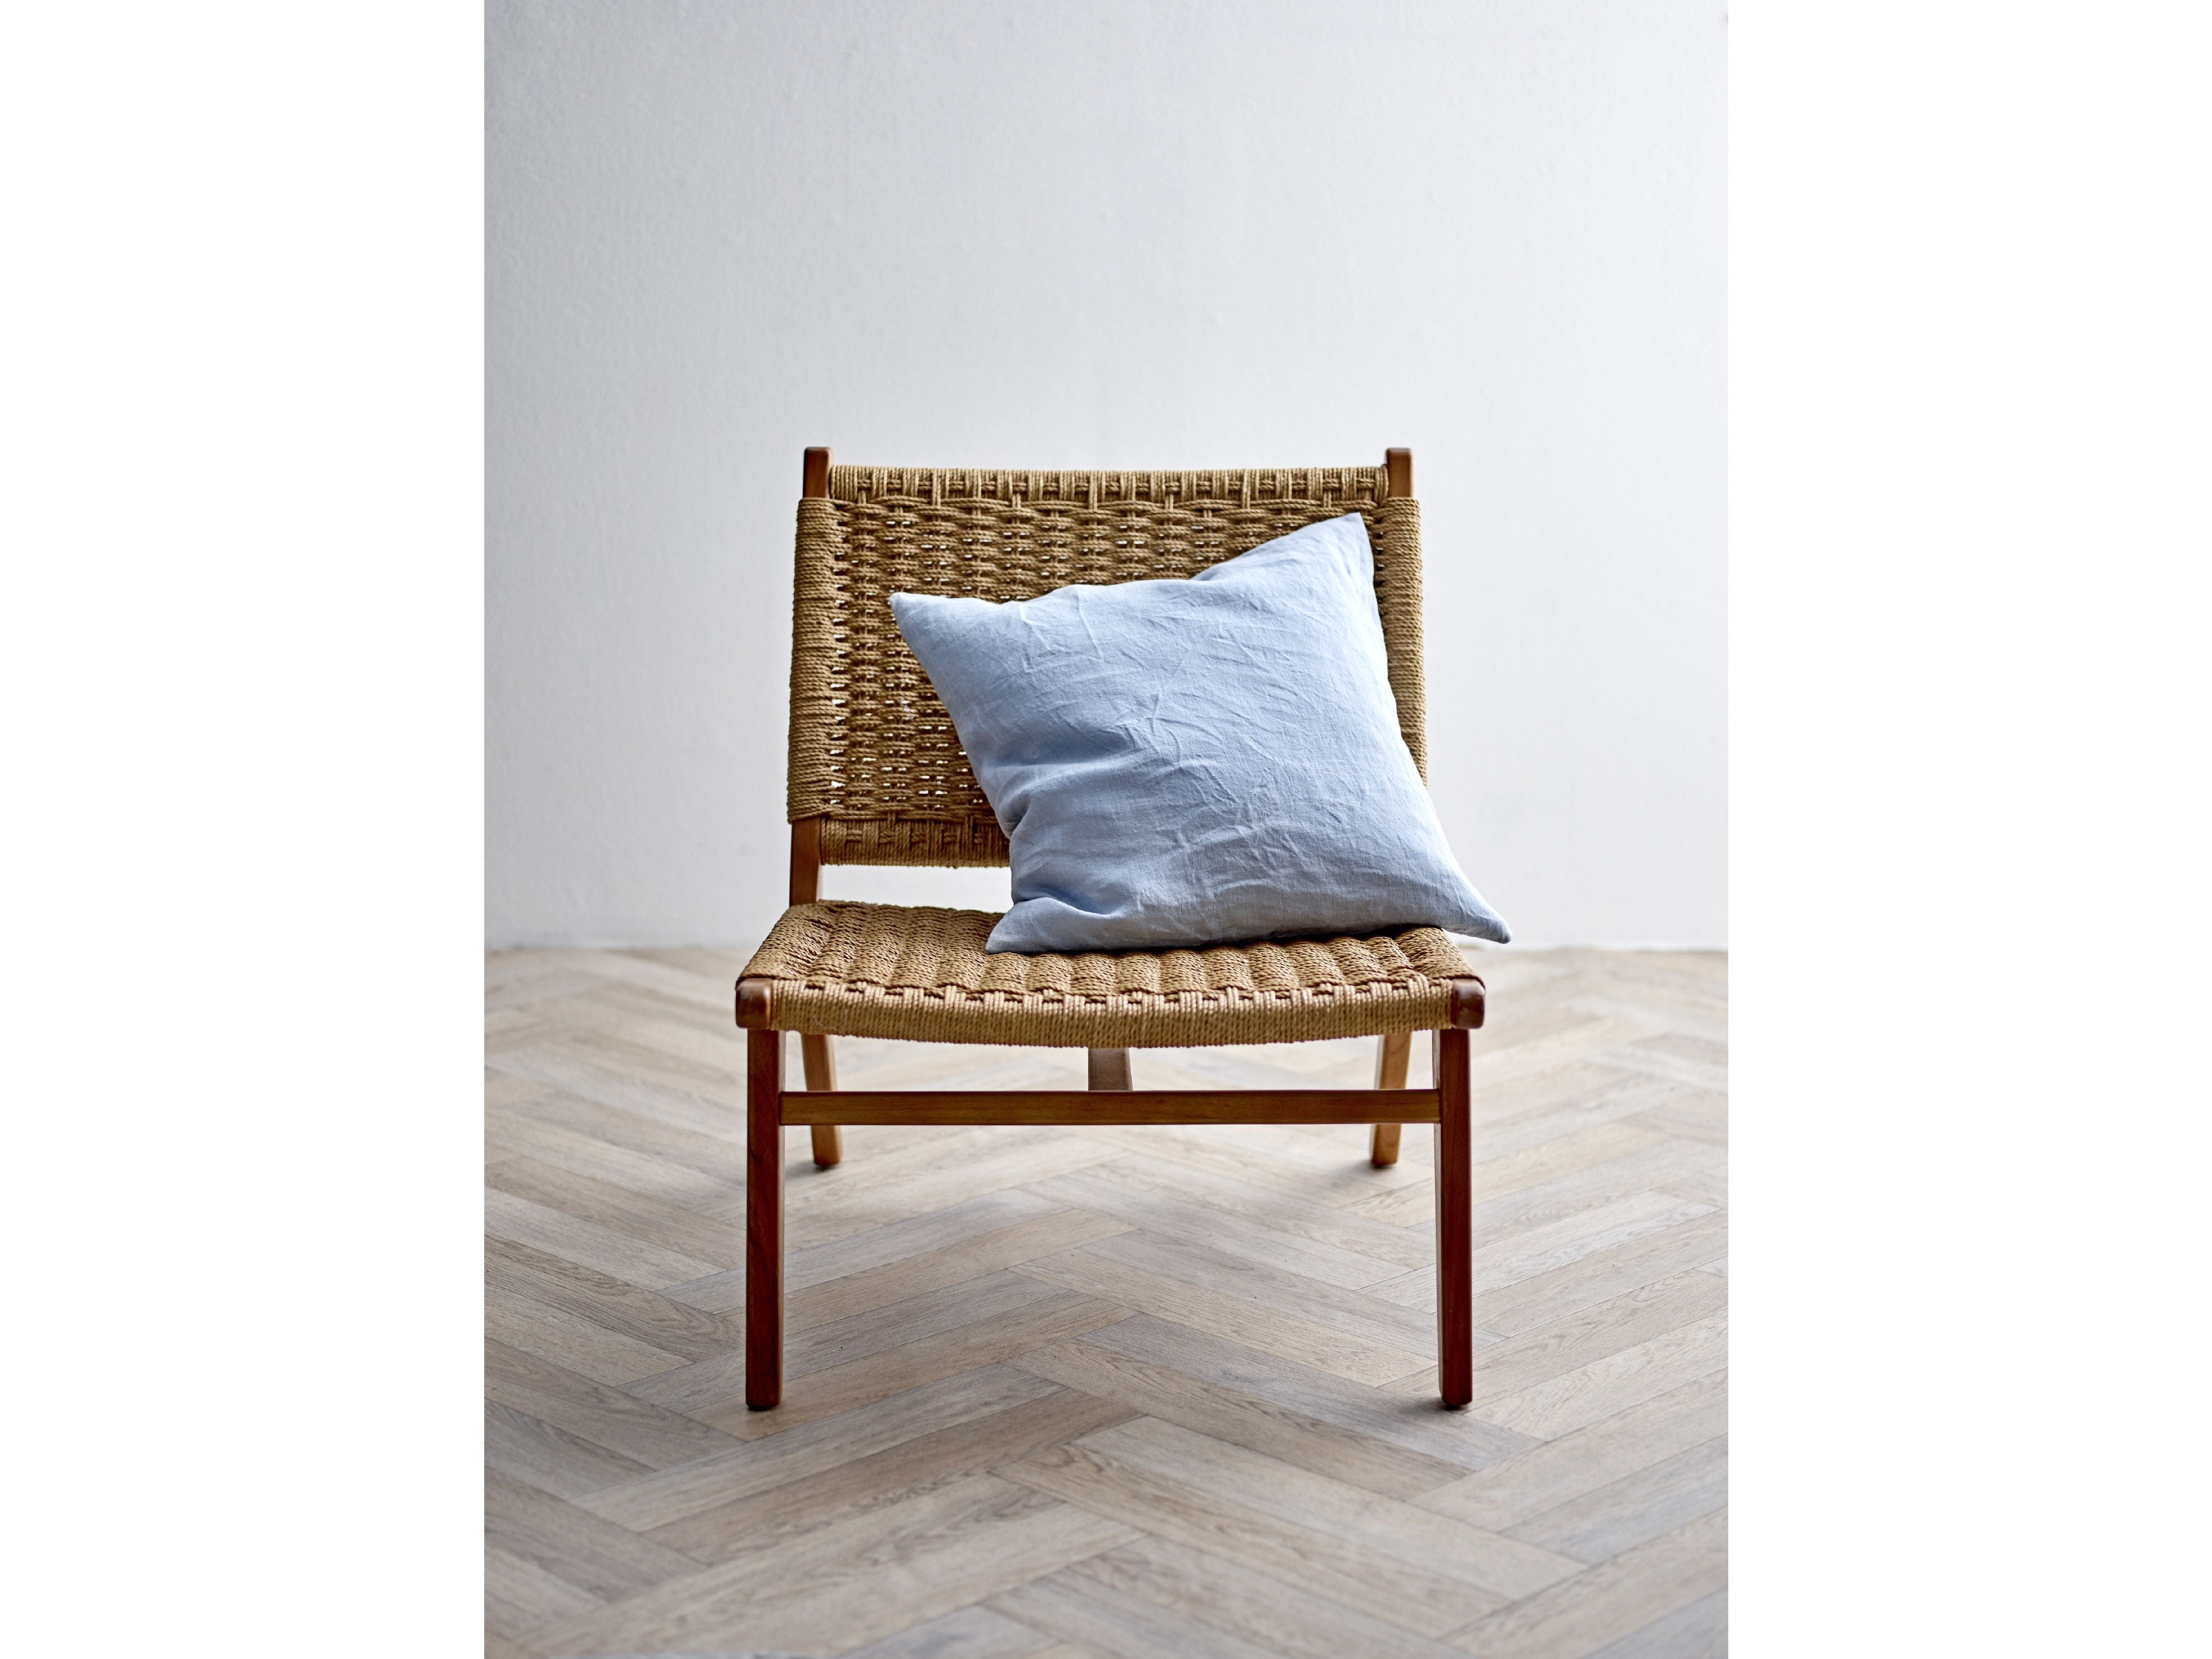 Södahl Linen Cushion Cover 50x50 Cm, Linen Blue